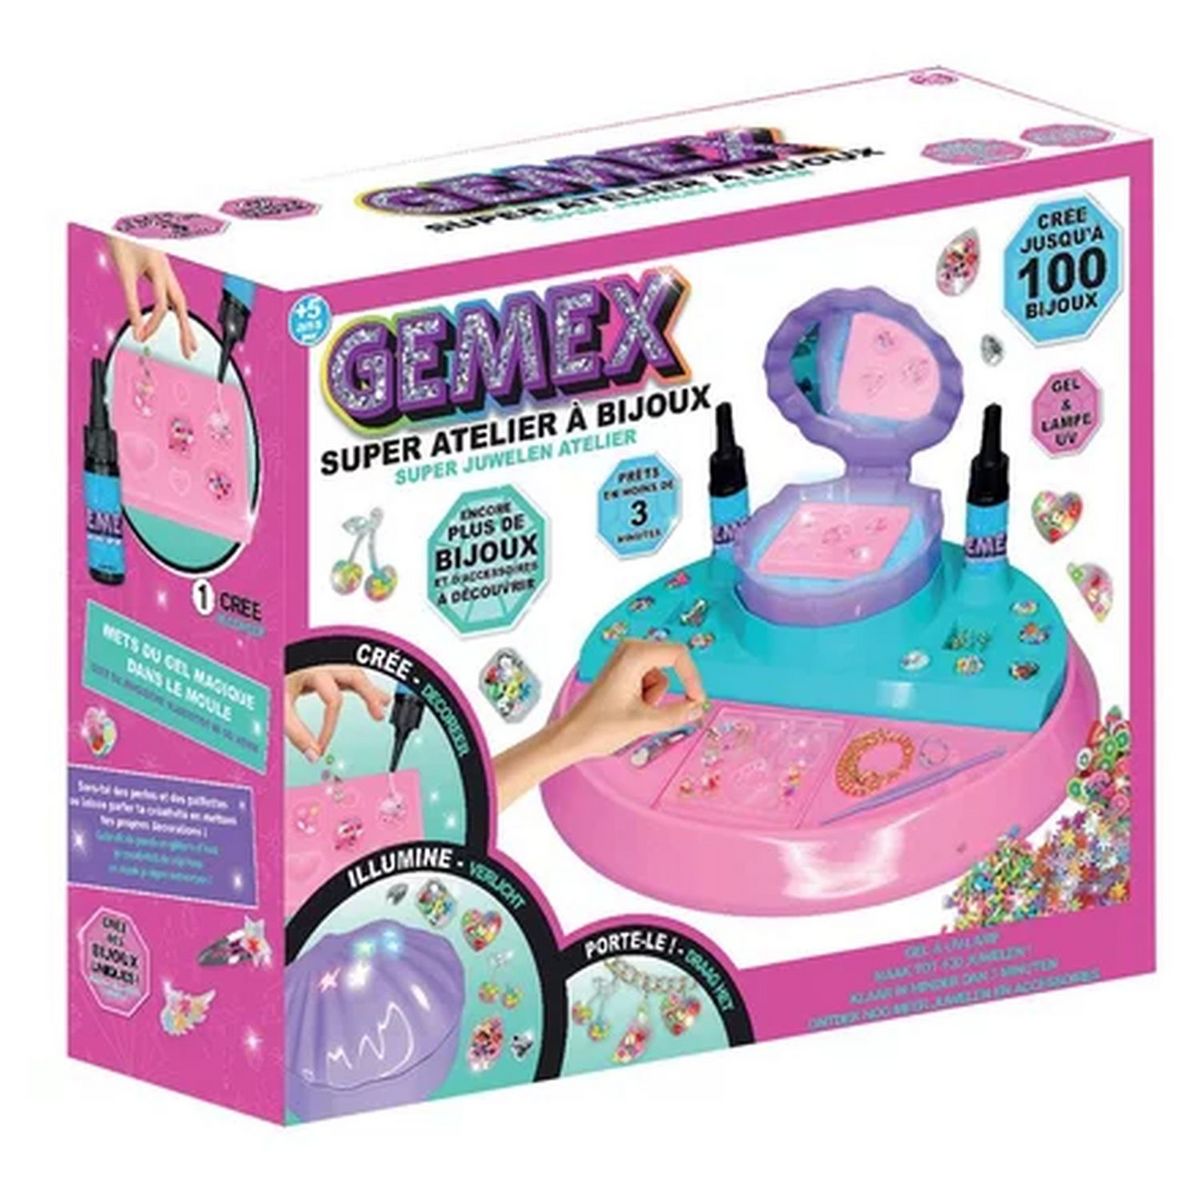 GEMEX - L'atelier à bijoux - PubTV - Best of Toys 